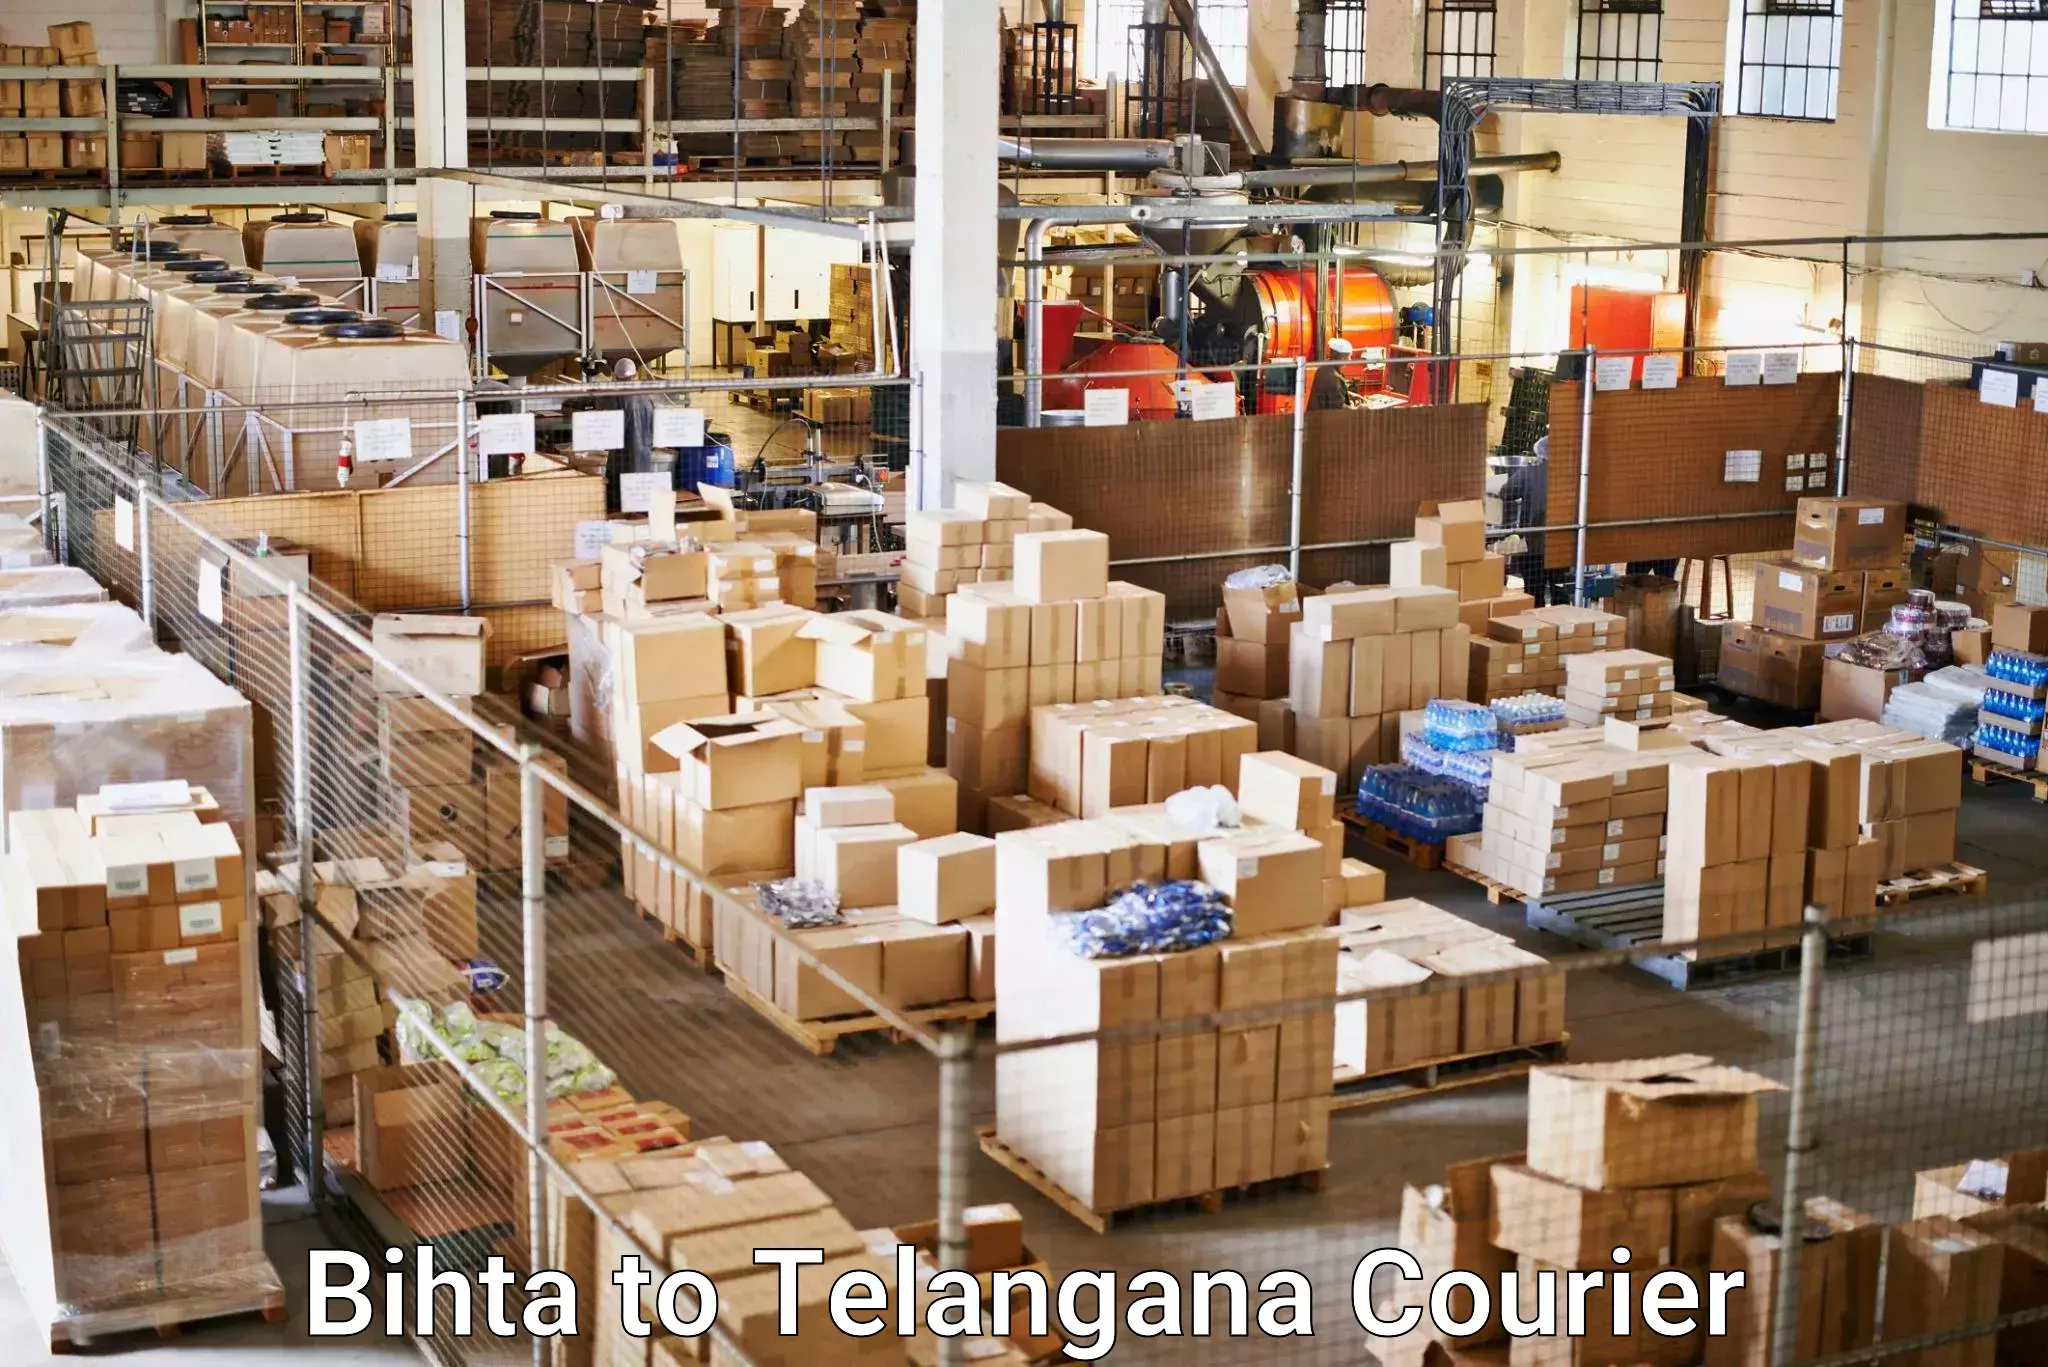 High-efficiency logistics Bihta to Mahabubabad